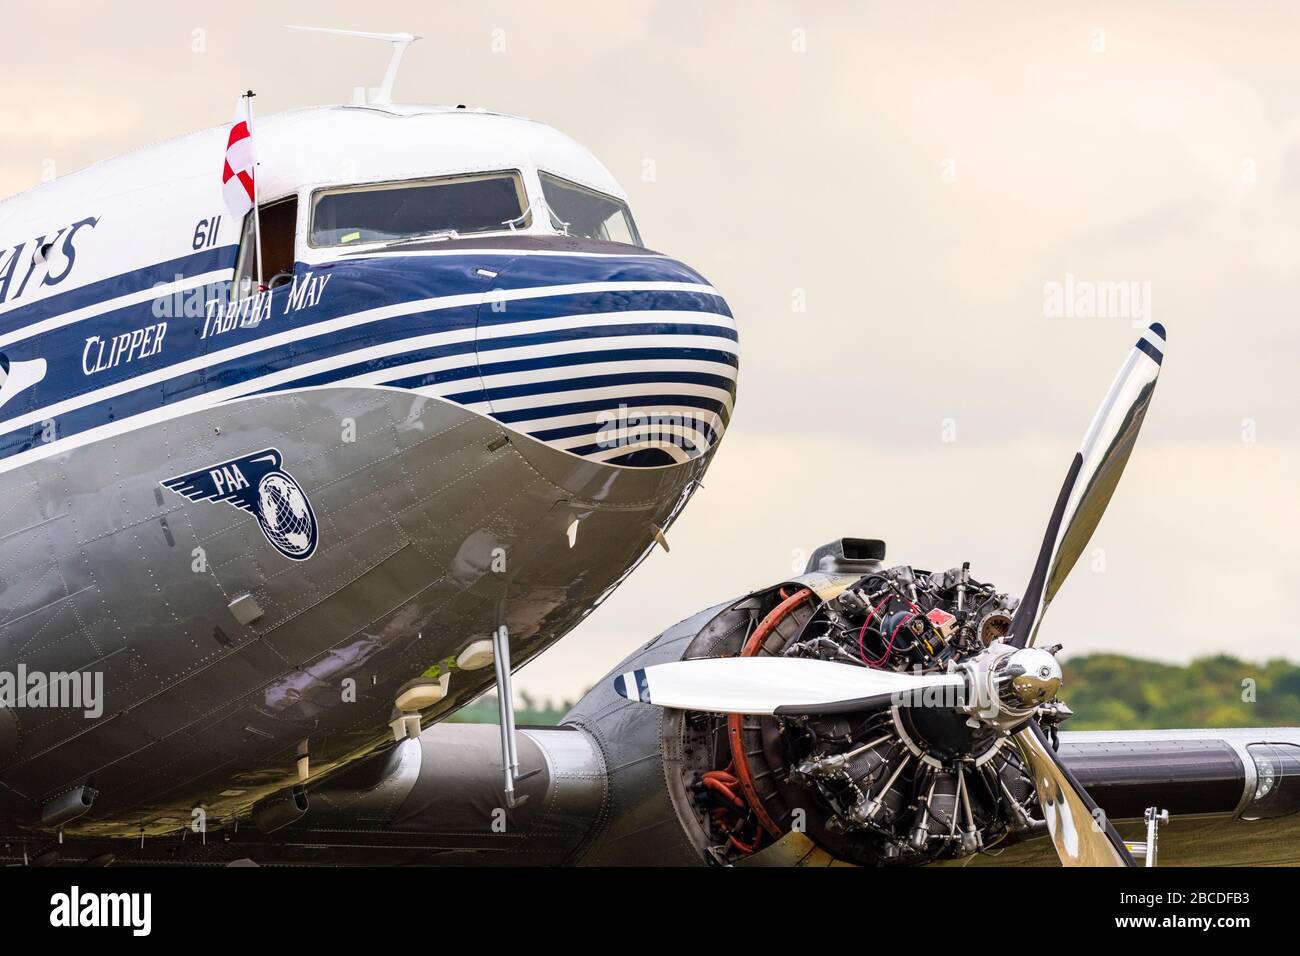 C 47 Dakota Flugzeug 'Tabitha May' in Pan American World Airways Lackierung bei Motorreparaturen in Duxford während des D-Day 75 Gedenkveranstaltung Stockfoto